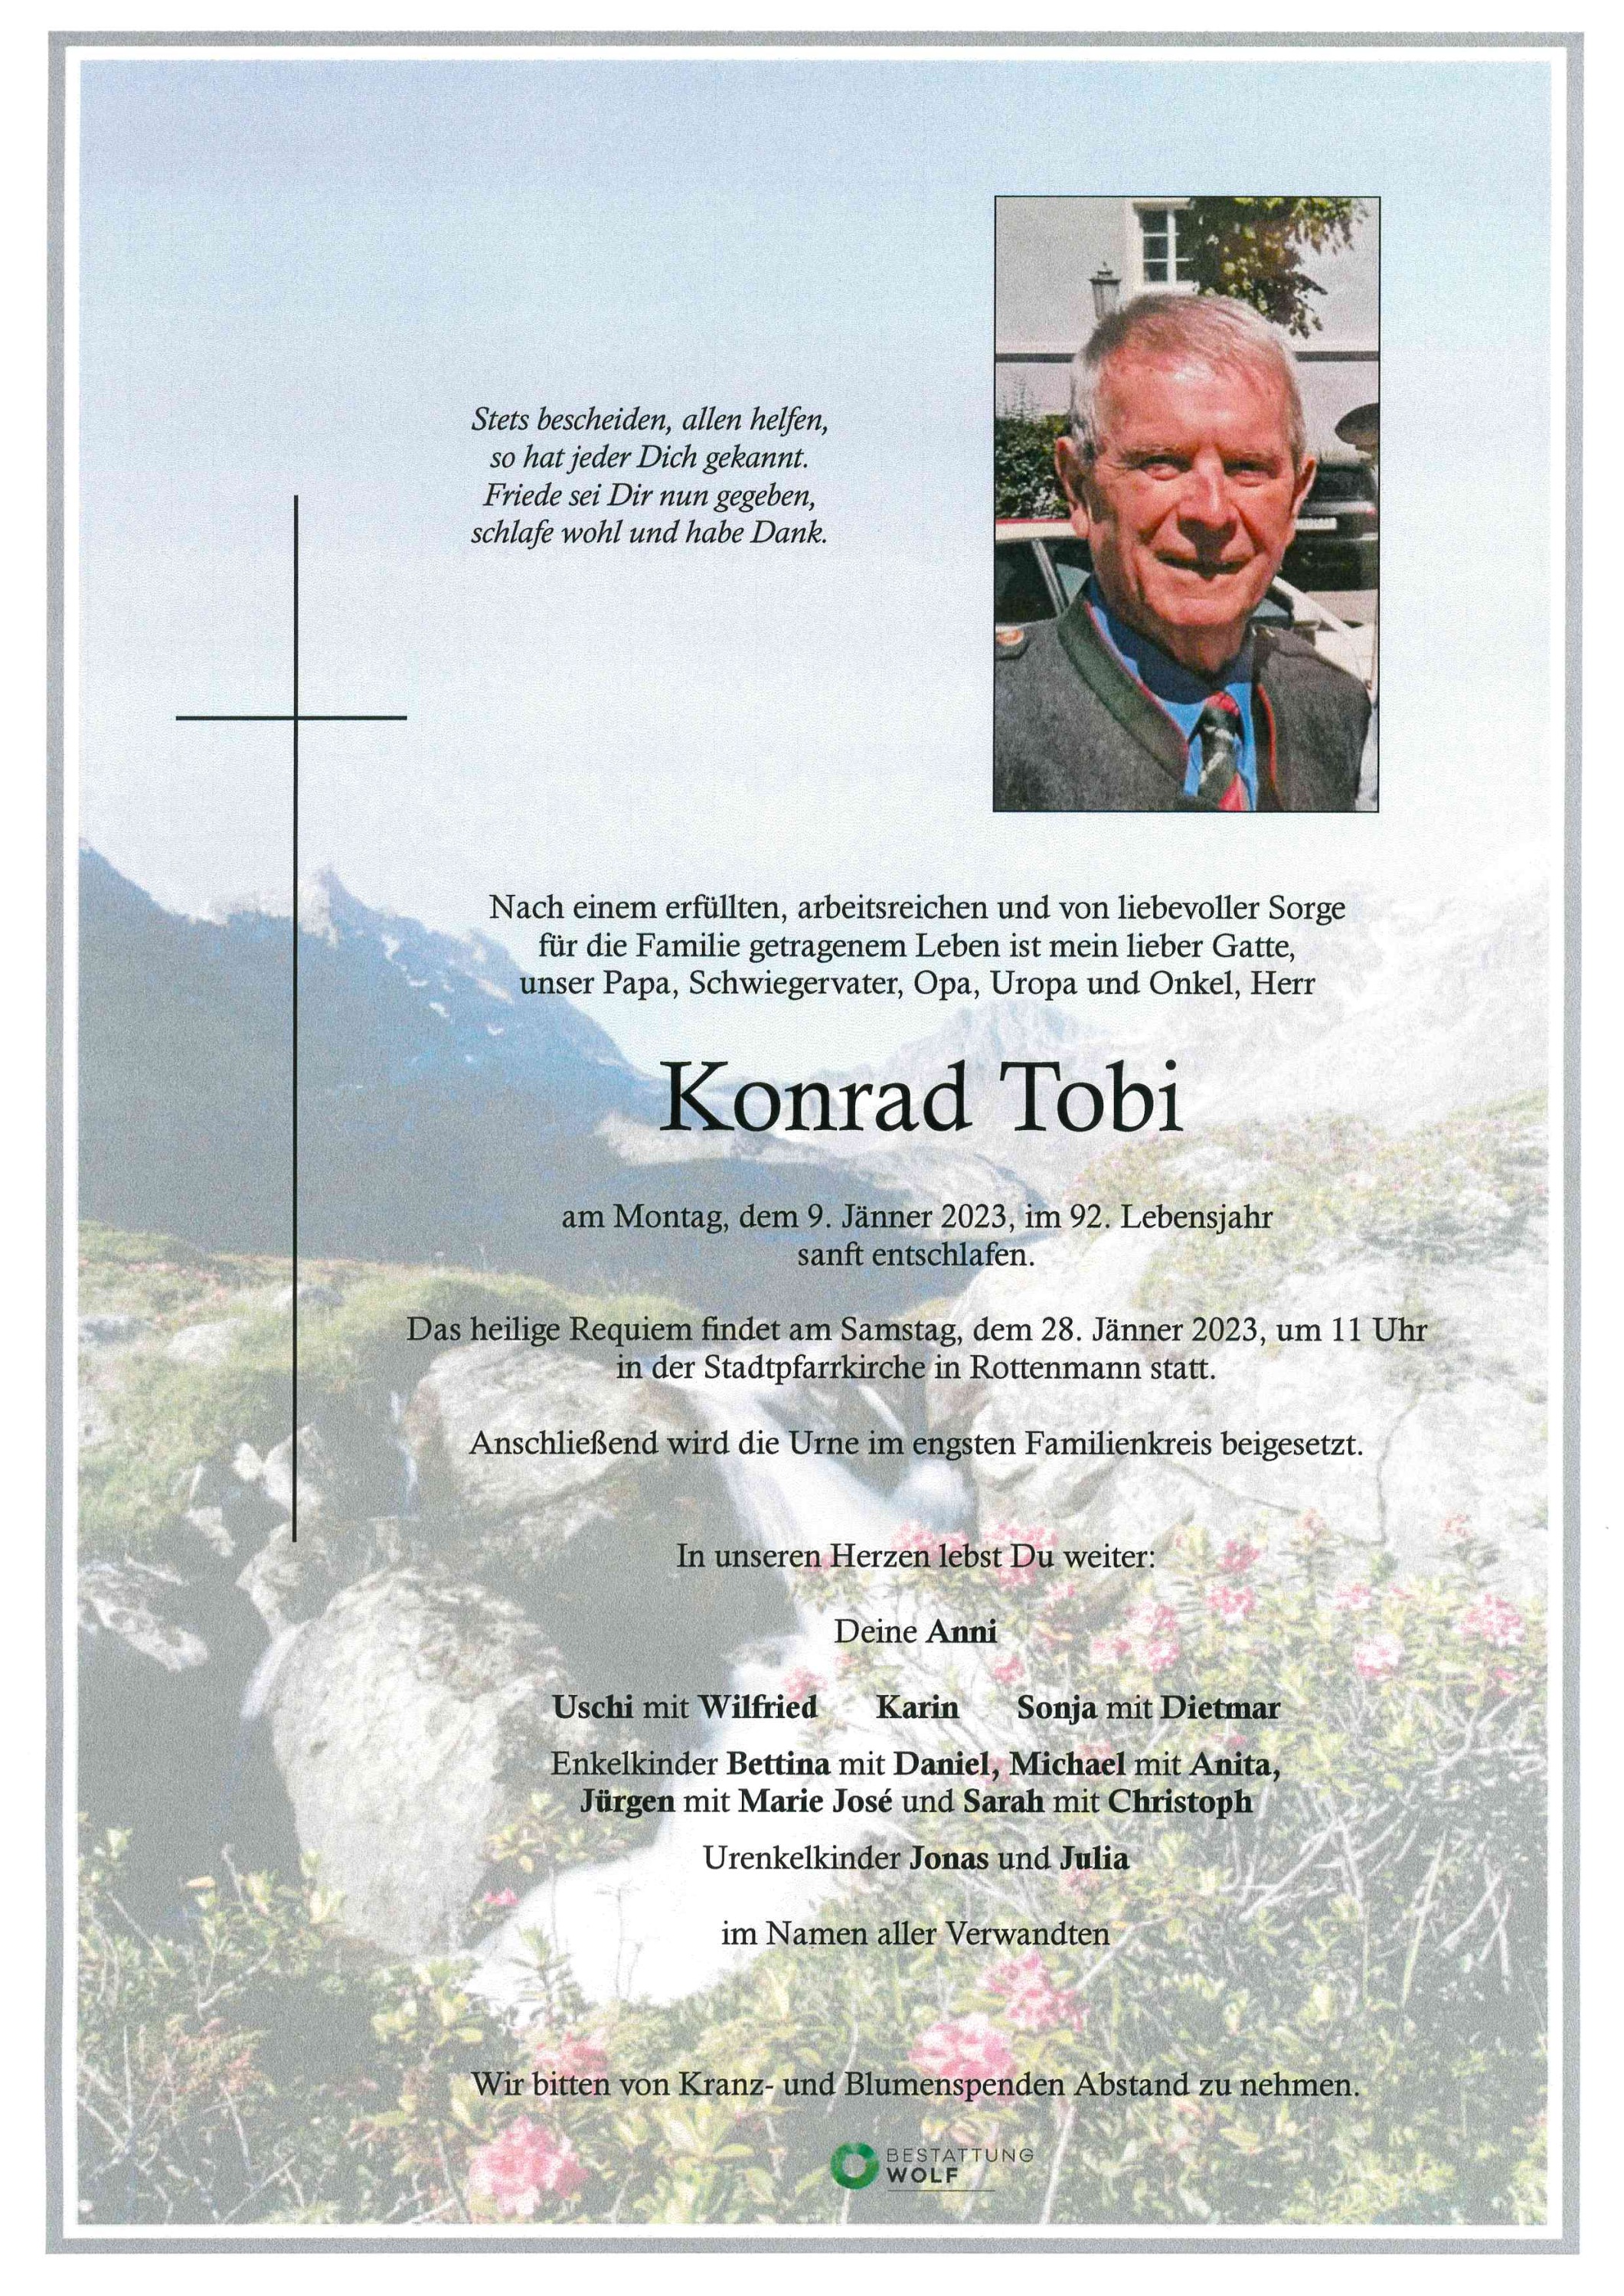 Konrad Tobi